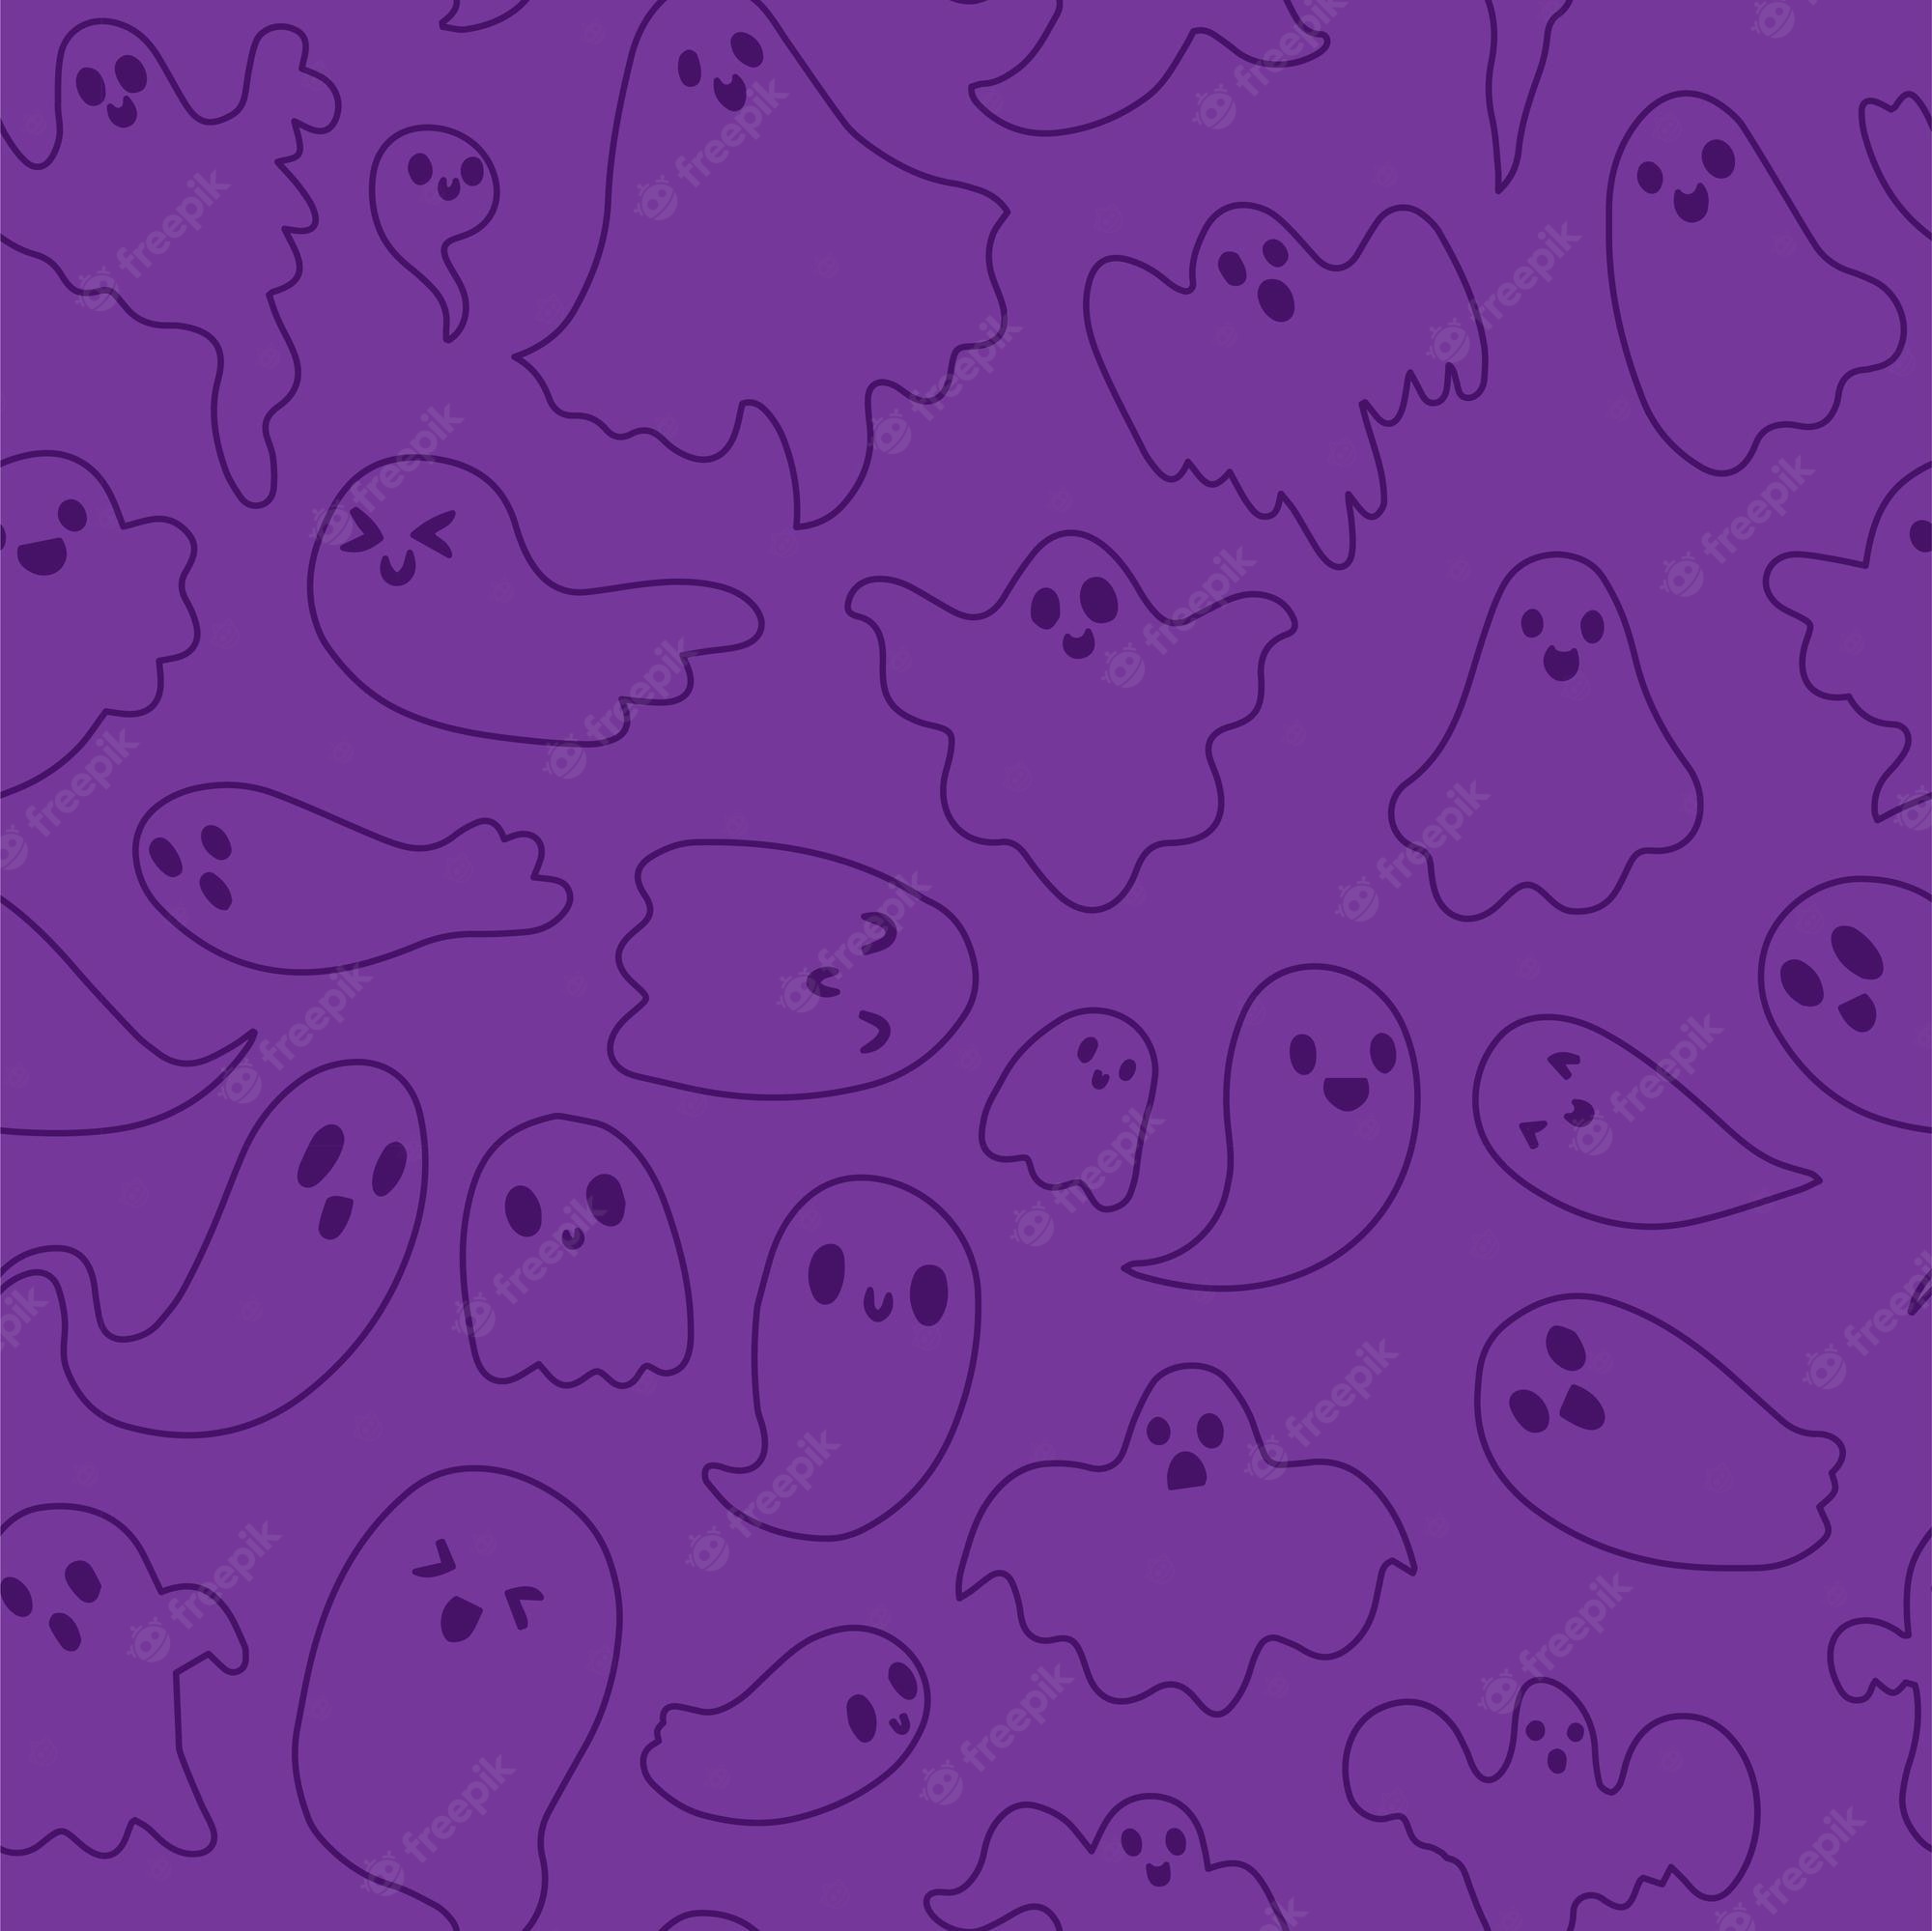 Free Vectors  Halloween ghost wallpaper purple